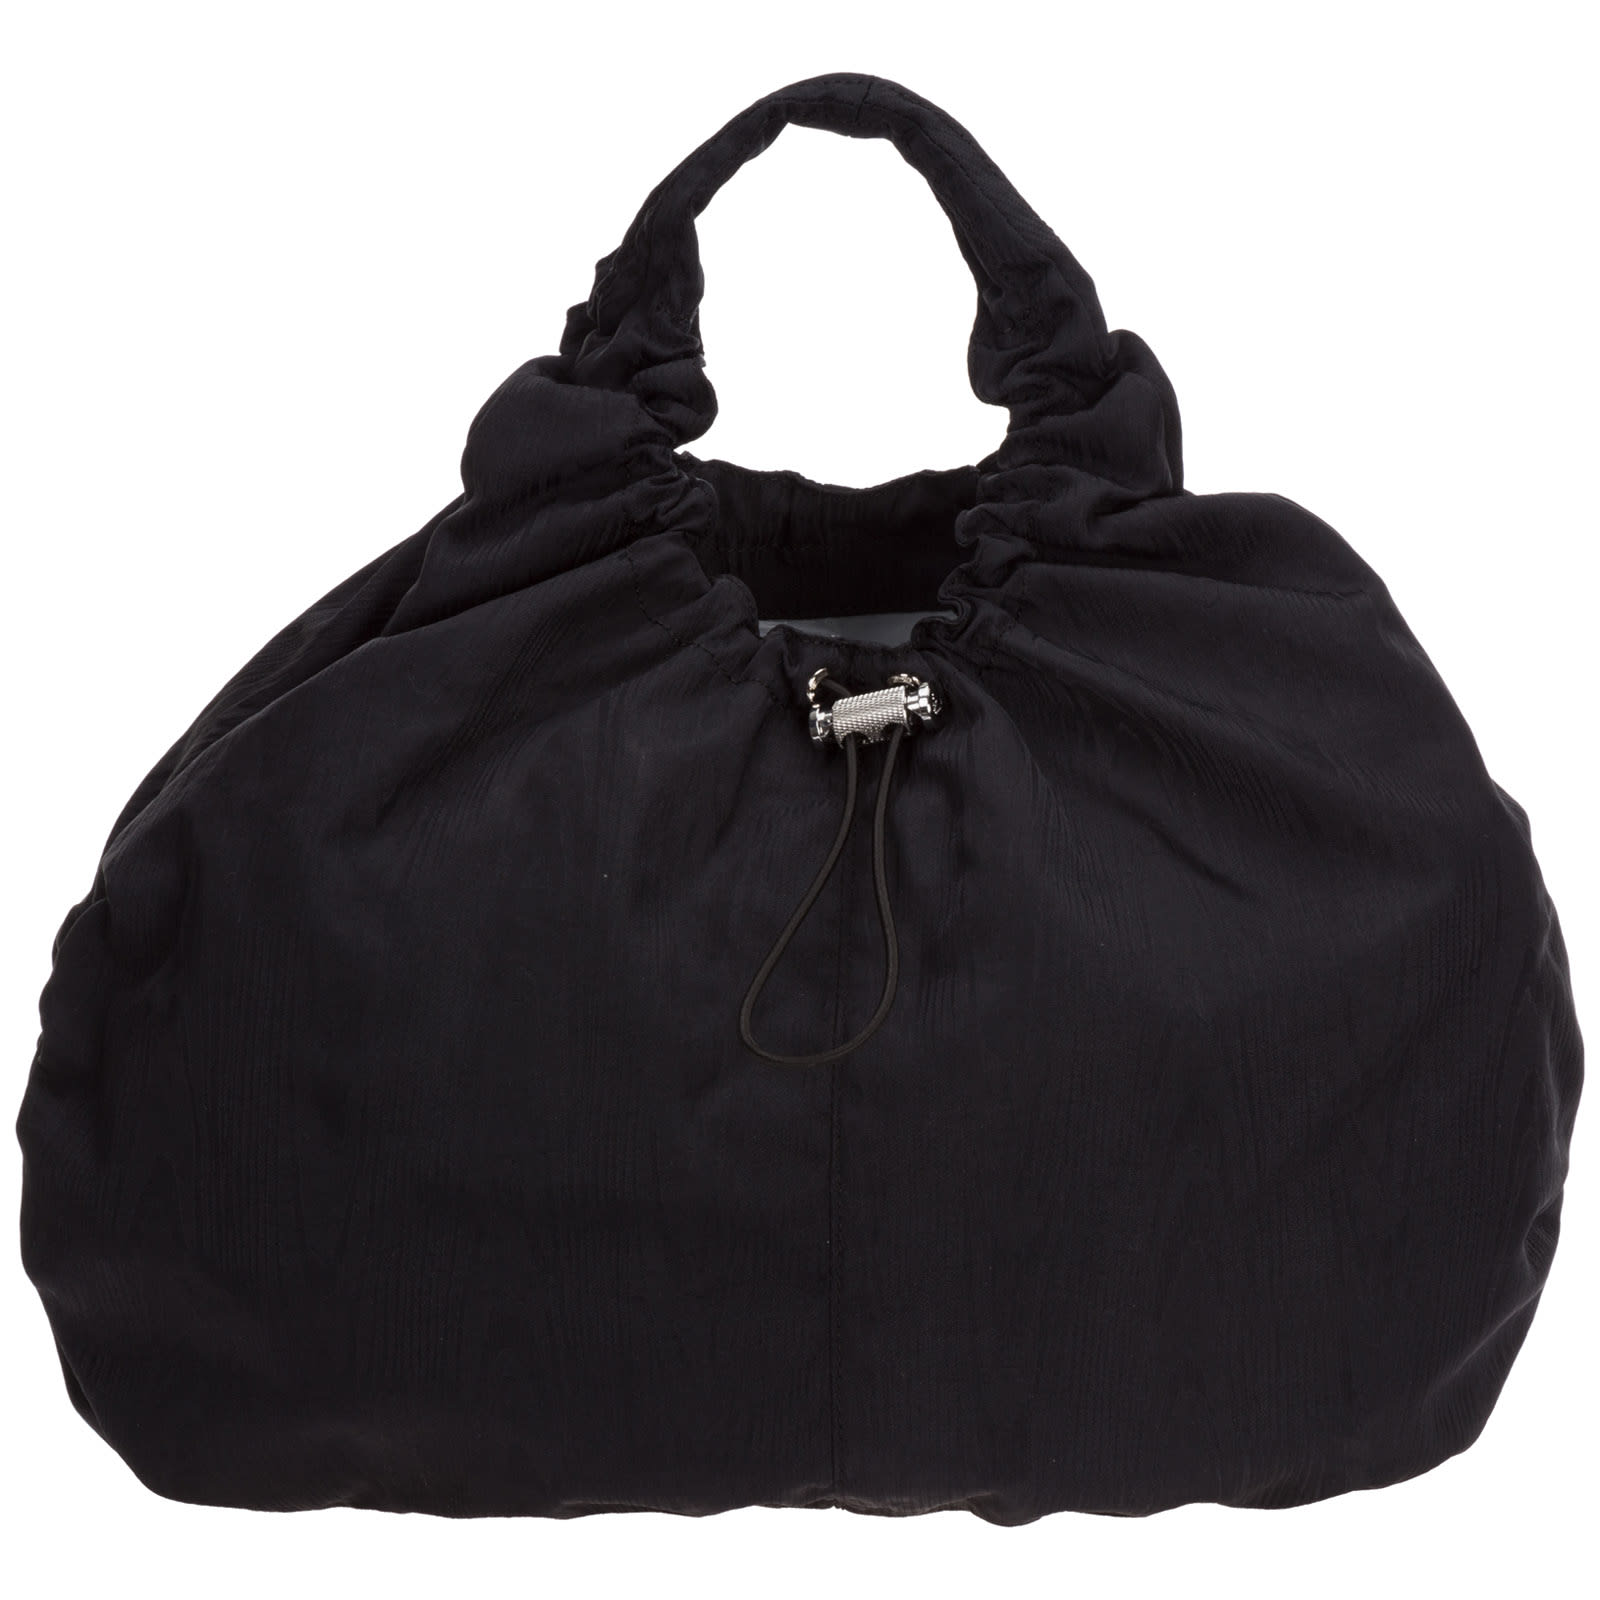 Emporio Armani Mask Handbags